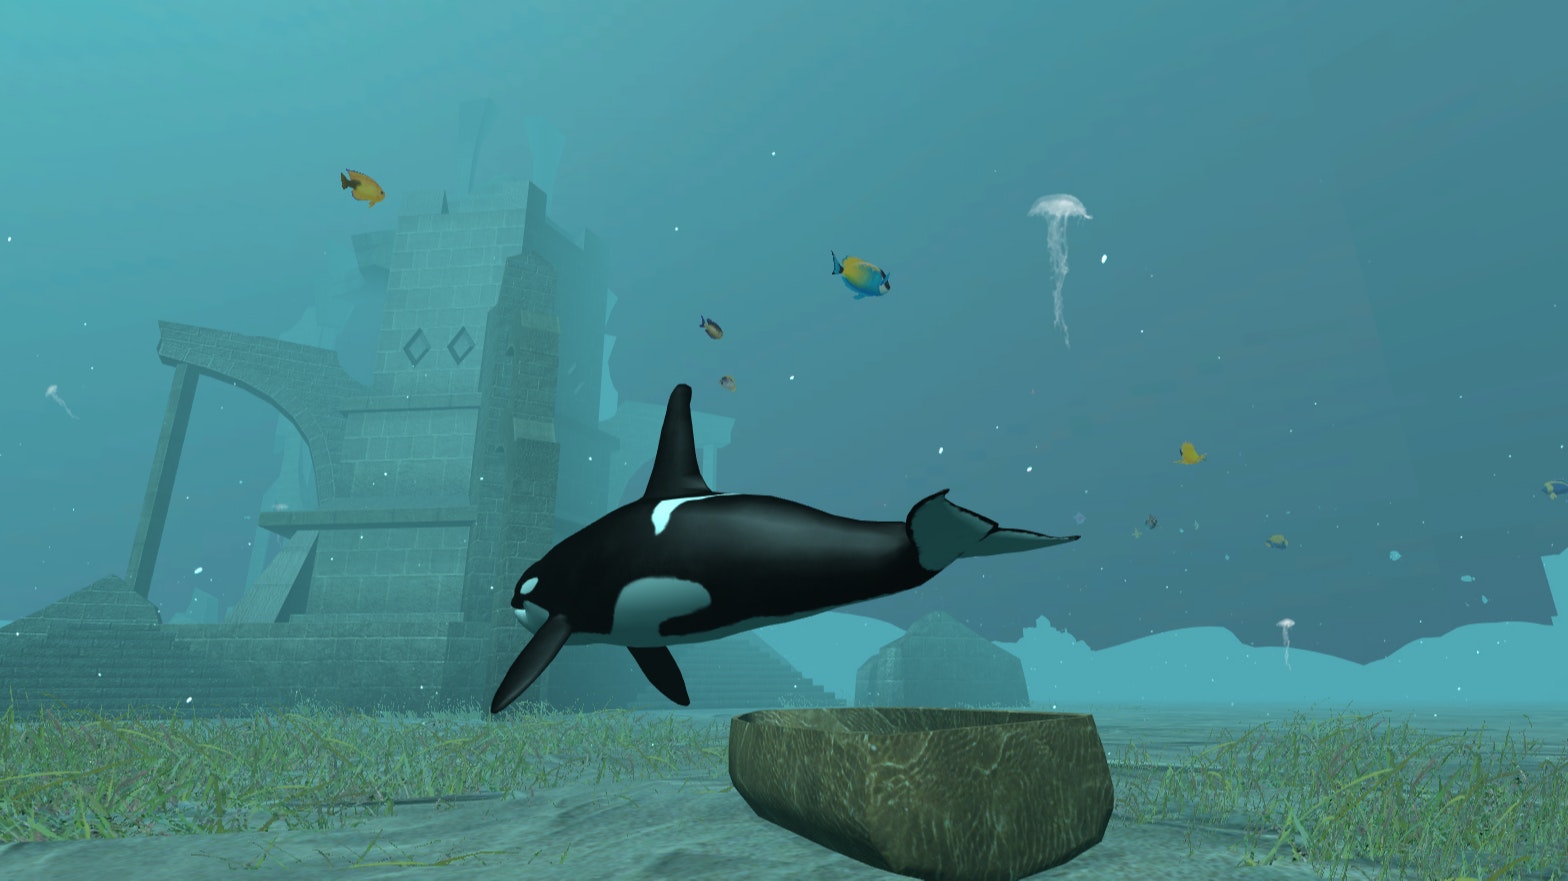 Shark Games - Play Free Online Shark Games